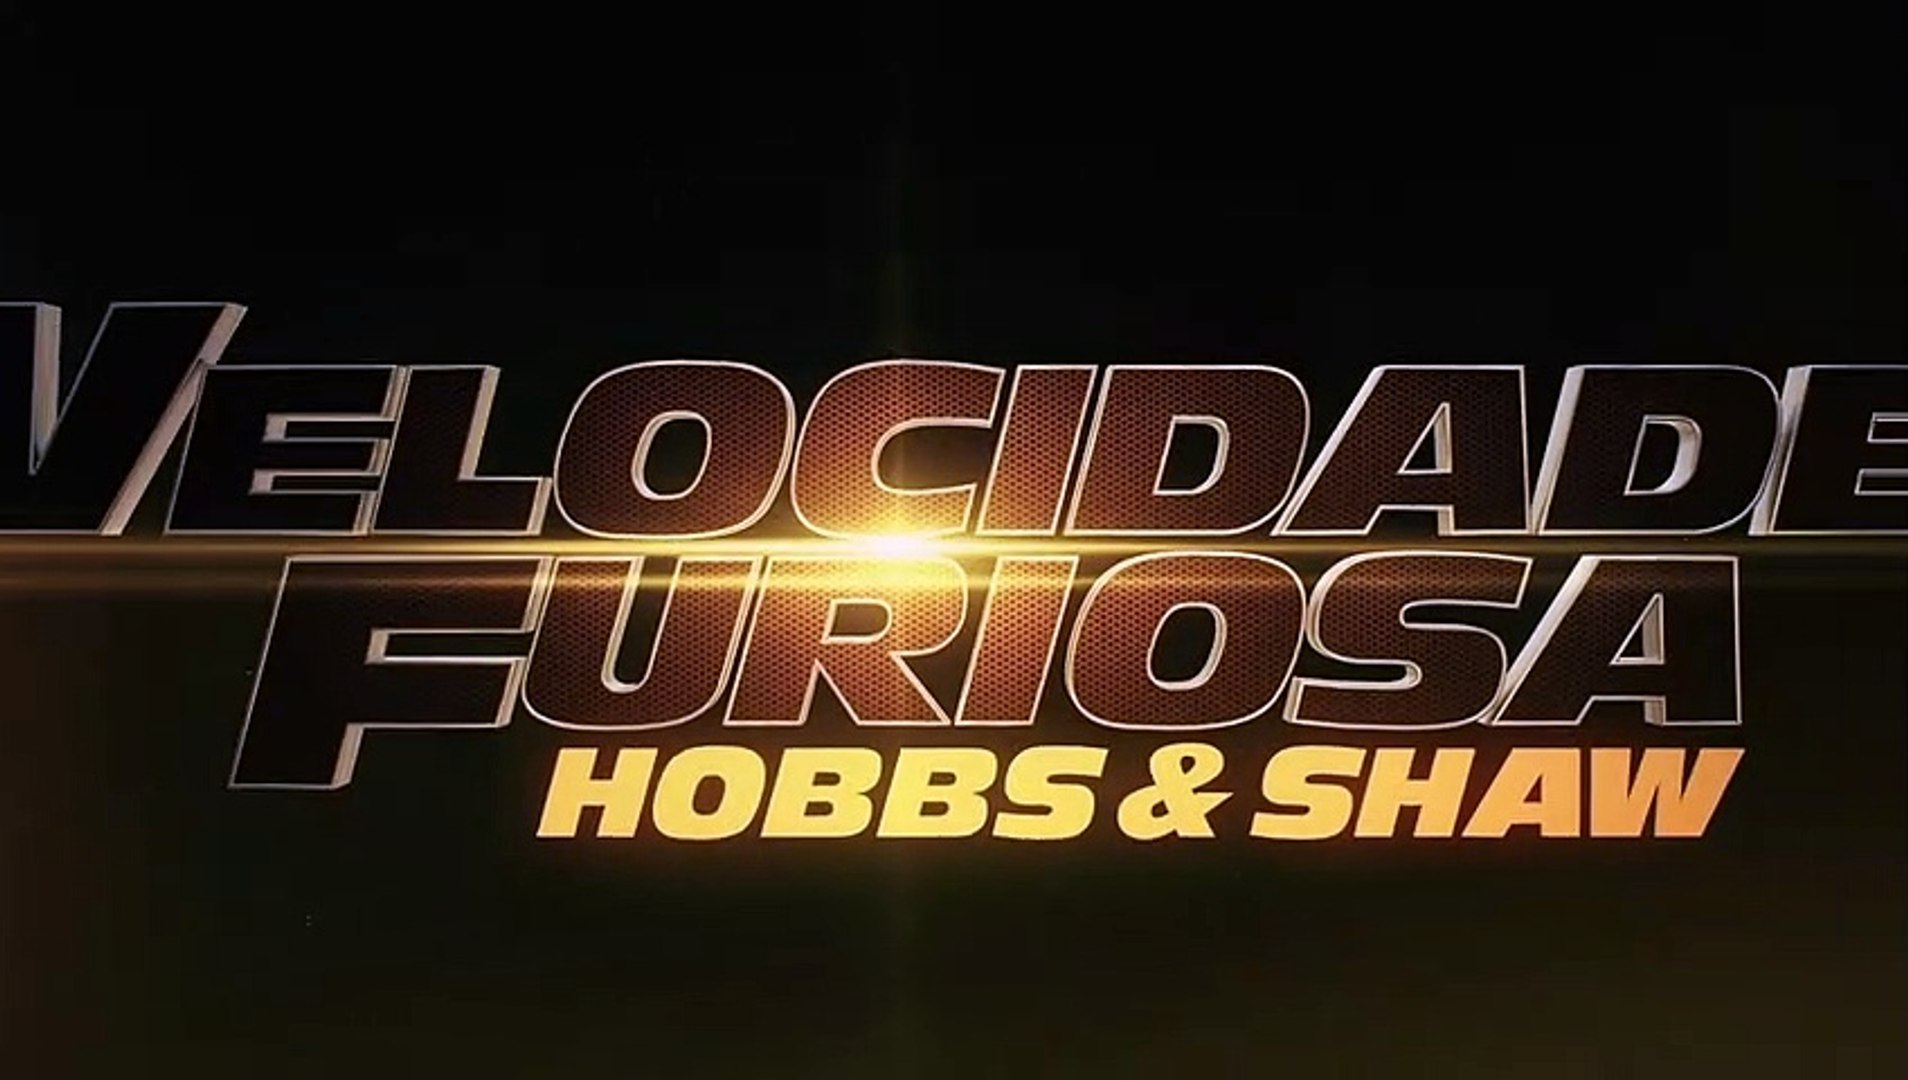 Velocidade Furiosa: Hobbs & Shaw  Uma velocidade diferente - ComUM